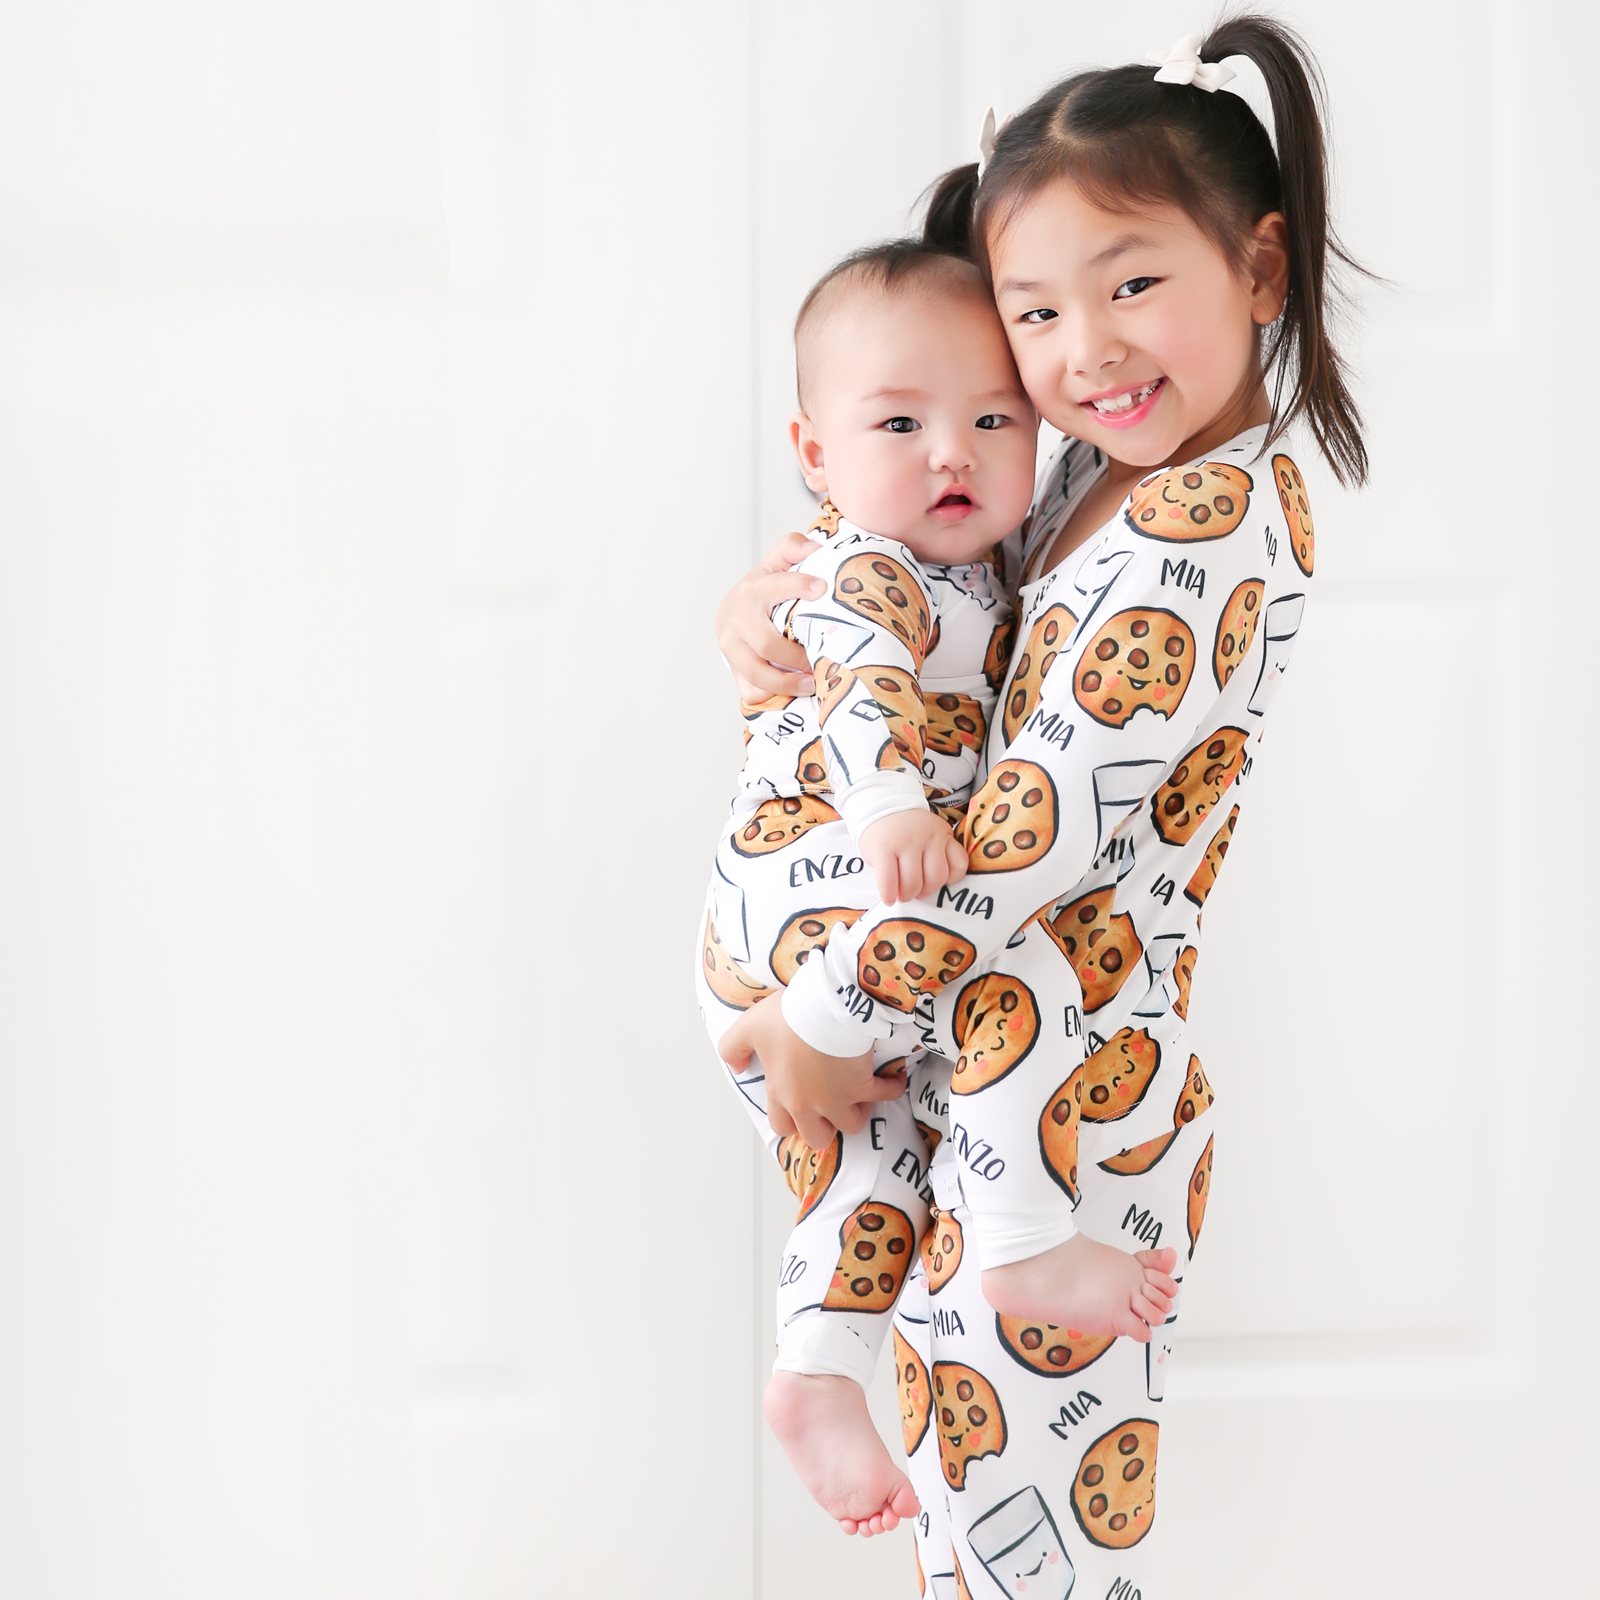 Personalized Kids Pyjamas (2 piece set) - MARKETPLACE (Animal Designs)